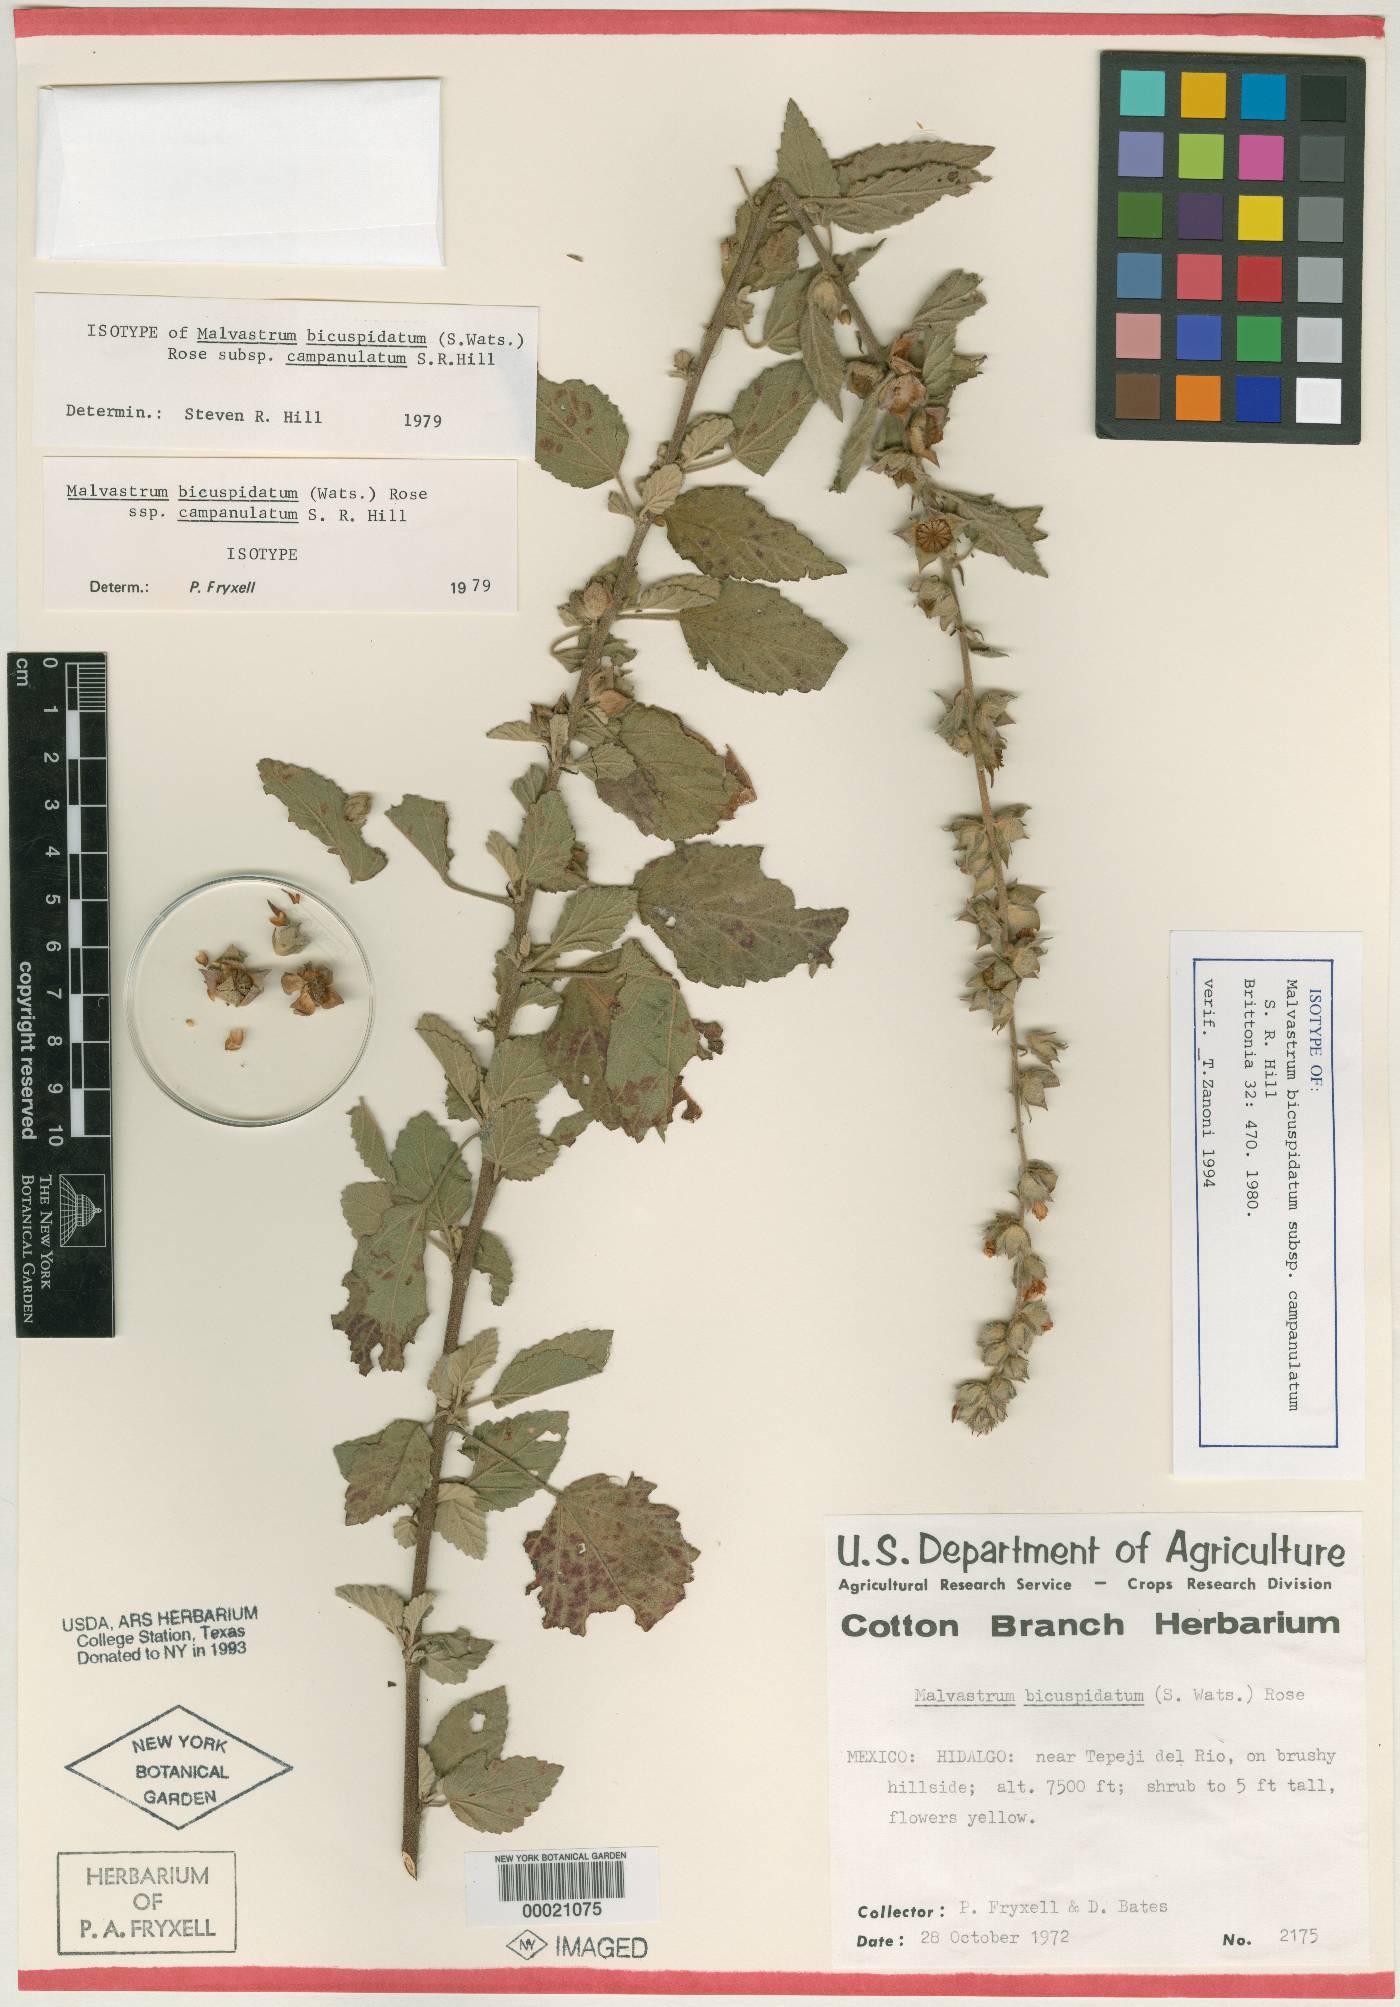 Malvastrum bicuspidatum subsp. campanulatum image